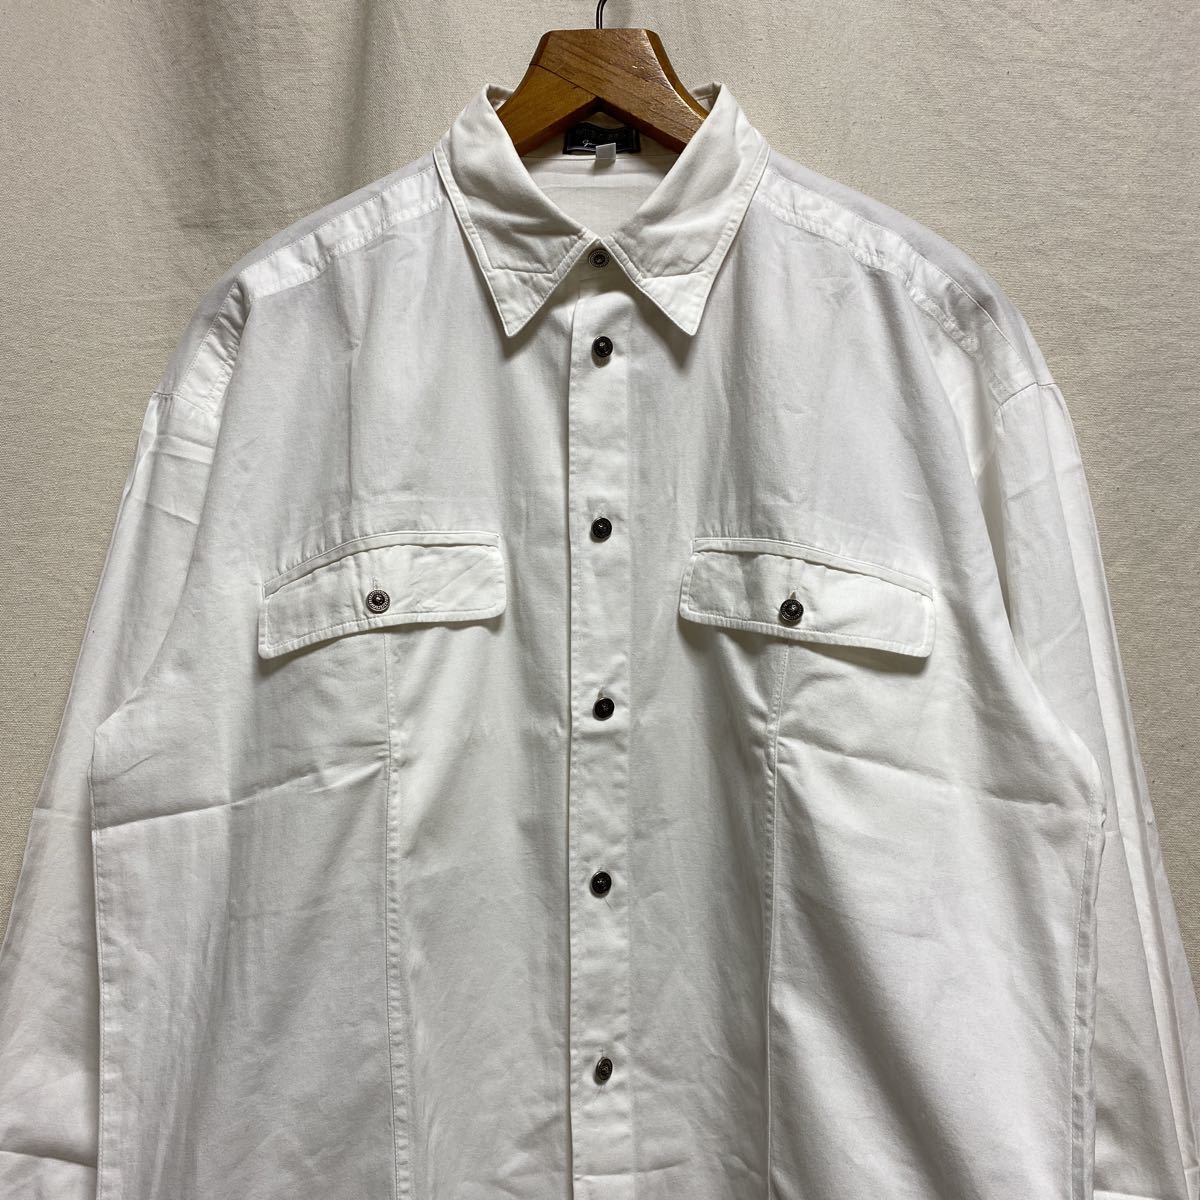 美品 オールド イタリア製 VERSUS ボタンダウンシャツ 90s 古着 ヴィンテージ 長袖シャツ ホワイト ヴェルサス ヴェルサーチ コットン